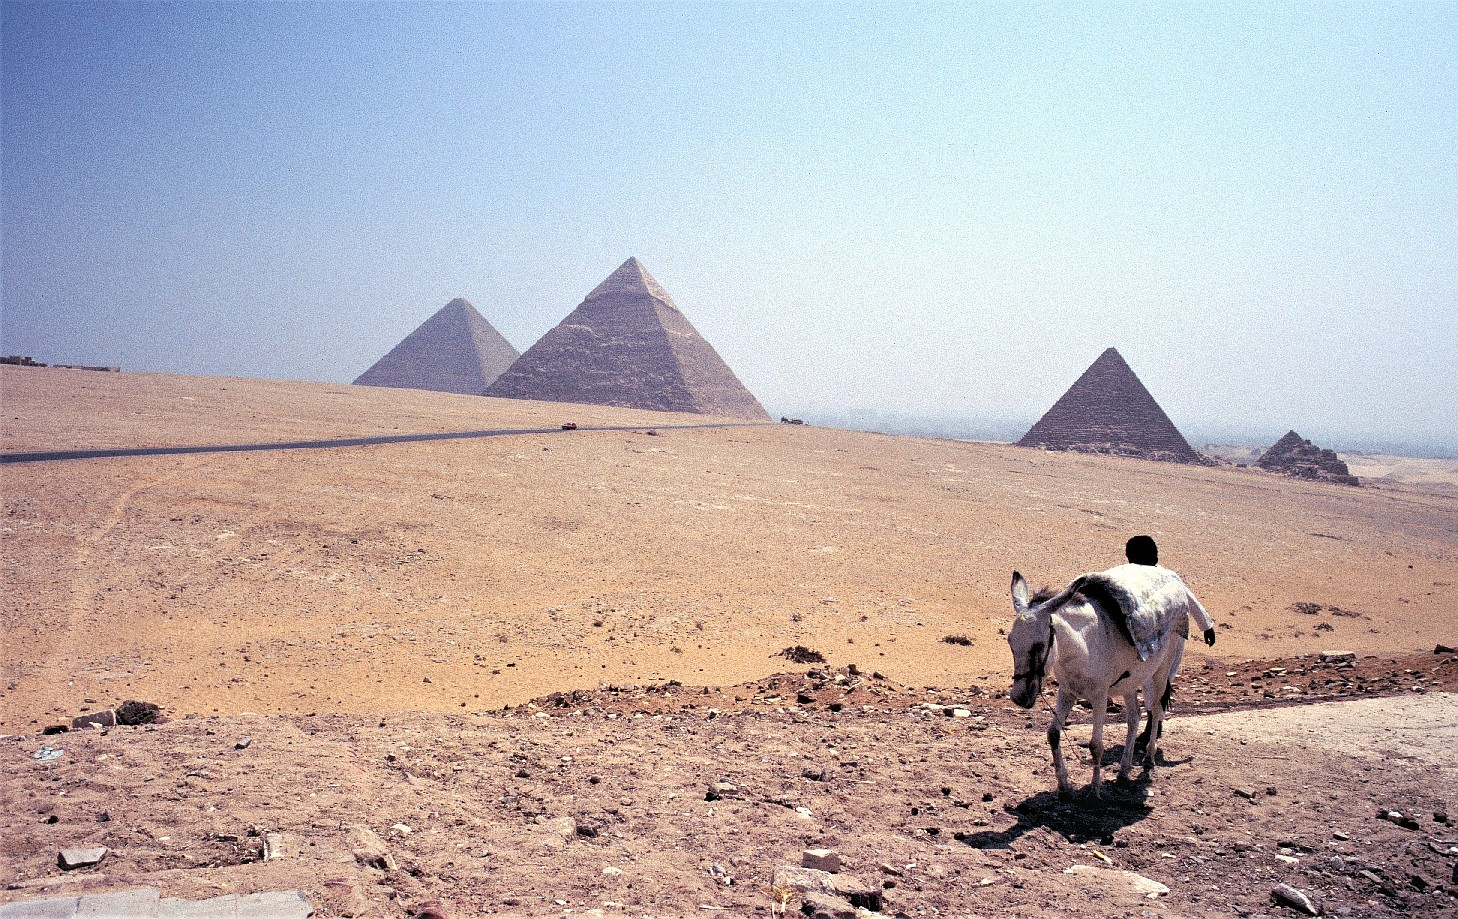 Les pyramides de Gizeh, aussi appelées complexe pyramidal de Gizeh, sont l'ensemble des pyramides égyptiennes situées dans la nécropole de Gizeh sur le plateau de Gizeh. Ce complexe pyramidal égyptien est classé au patrimoine mondial de l'humanité depuis 1979. Les trois plus grandes et plus célèbres des pyramides d'Égypte, celles de Khéops, Khéphren et Mykérinos, se trouvent sur la nécropole de Gizeh.